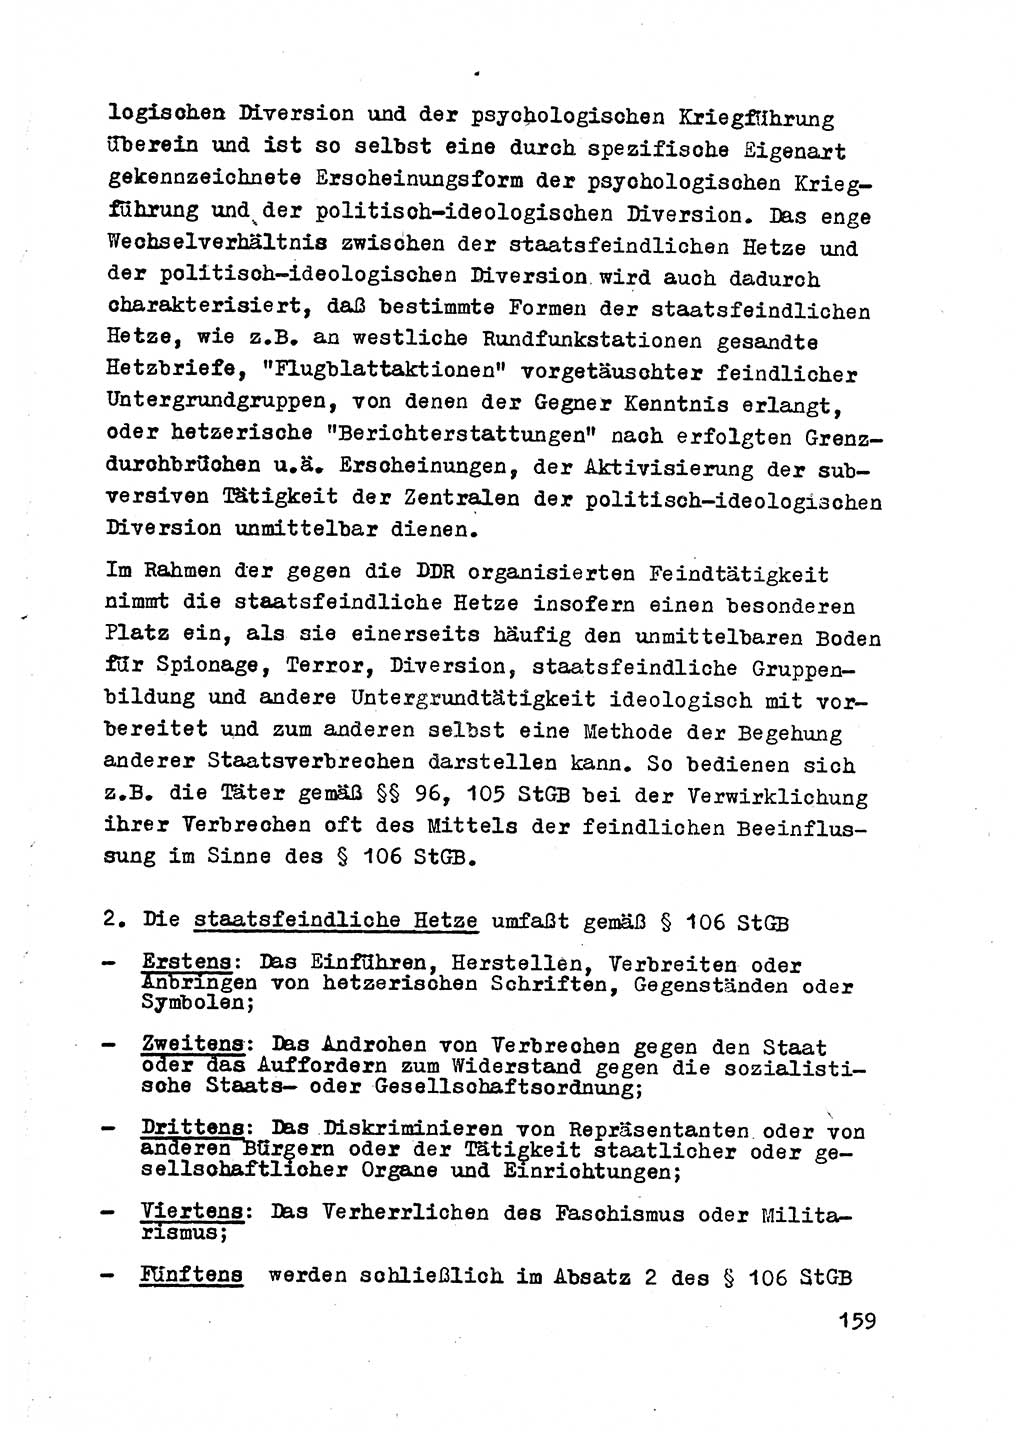 Strafrecht der DDR (Deutsche Demokratische Republik), Besonderer Teil, Lehrmaterial, Heft 2 1969, Seite 159 (Strafr. DDR BT Lehrmat. H. 2 1969, S. 159)